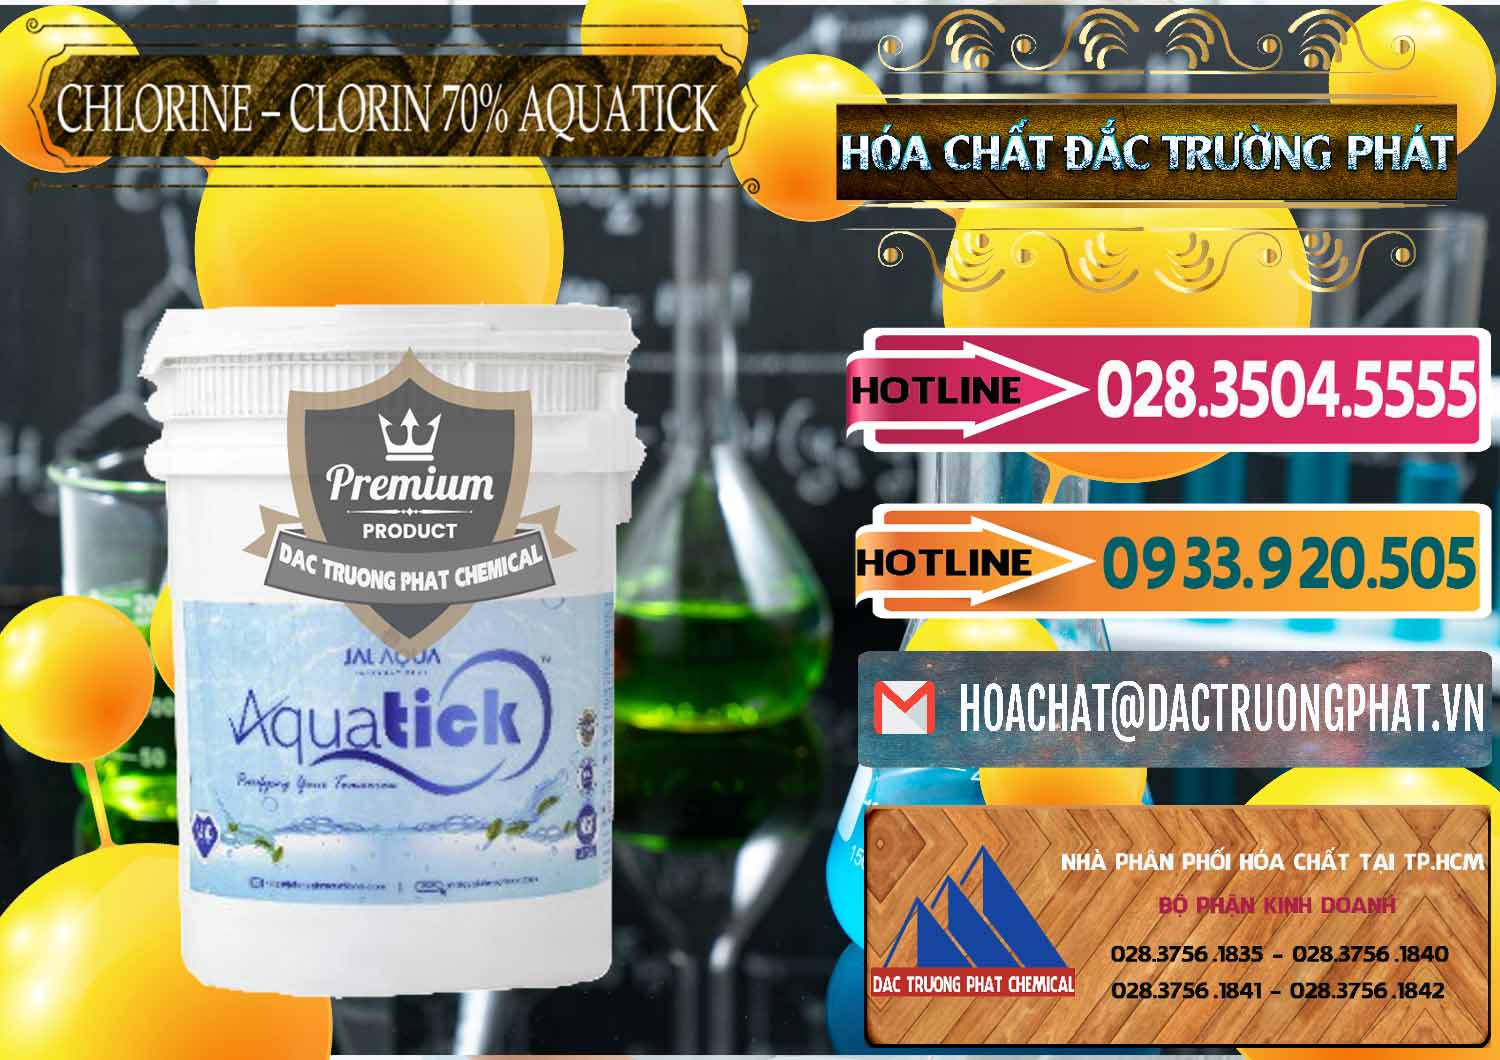 Nhà cung cấp & bán Chlorine – Clorin 70% Aquatick Thùng Cao Jal Aqua Ấn Độ India - 0237 - Cty chuyên cung ứng & phân phối hóa chất tại TP.HCM - dactruongphat.vn